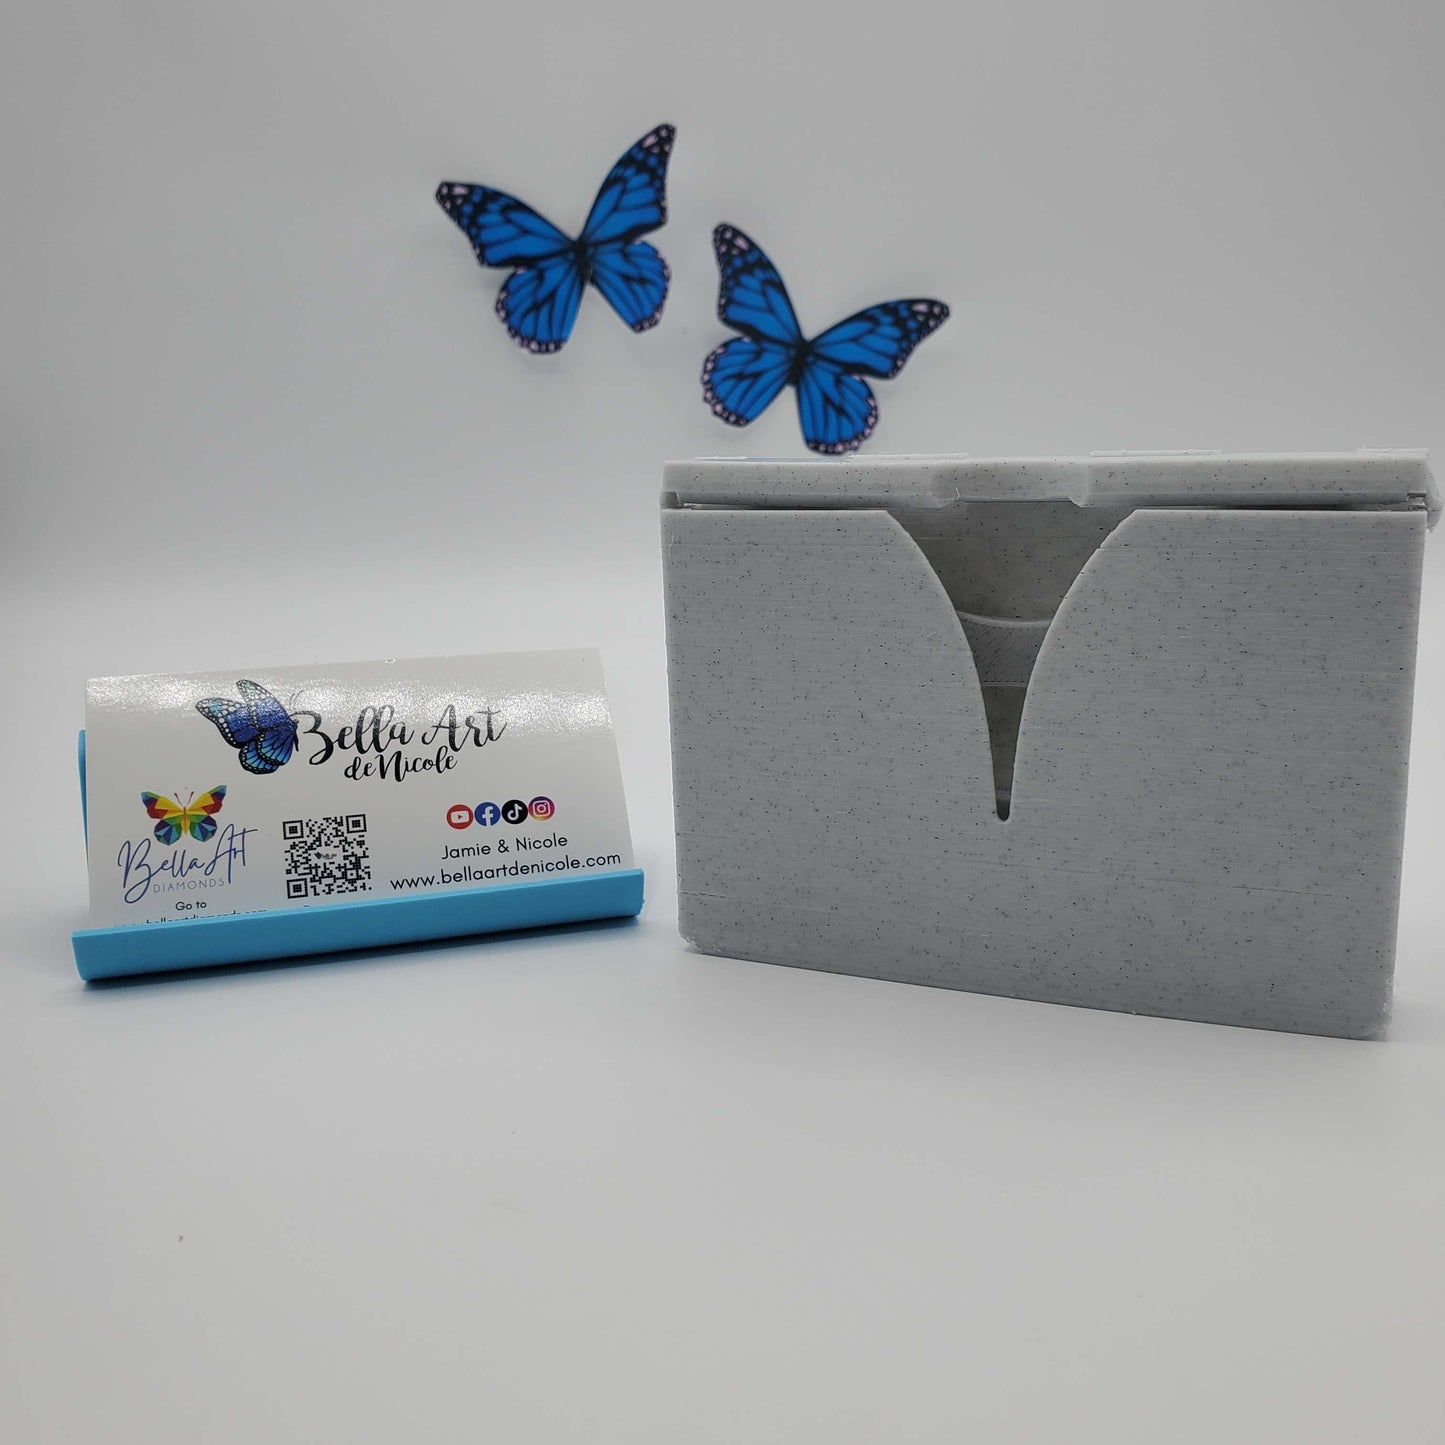 Smaller Diamond Painting Release Paper Holder/Dispenser